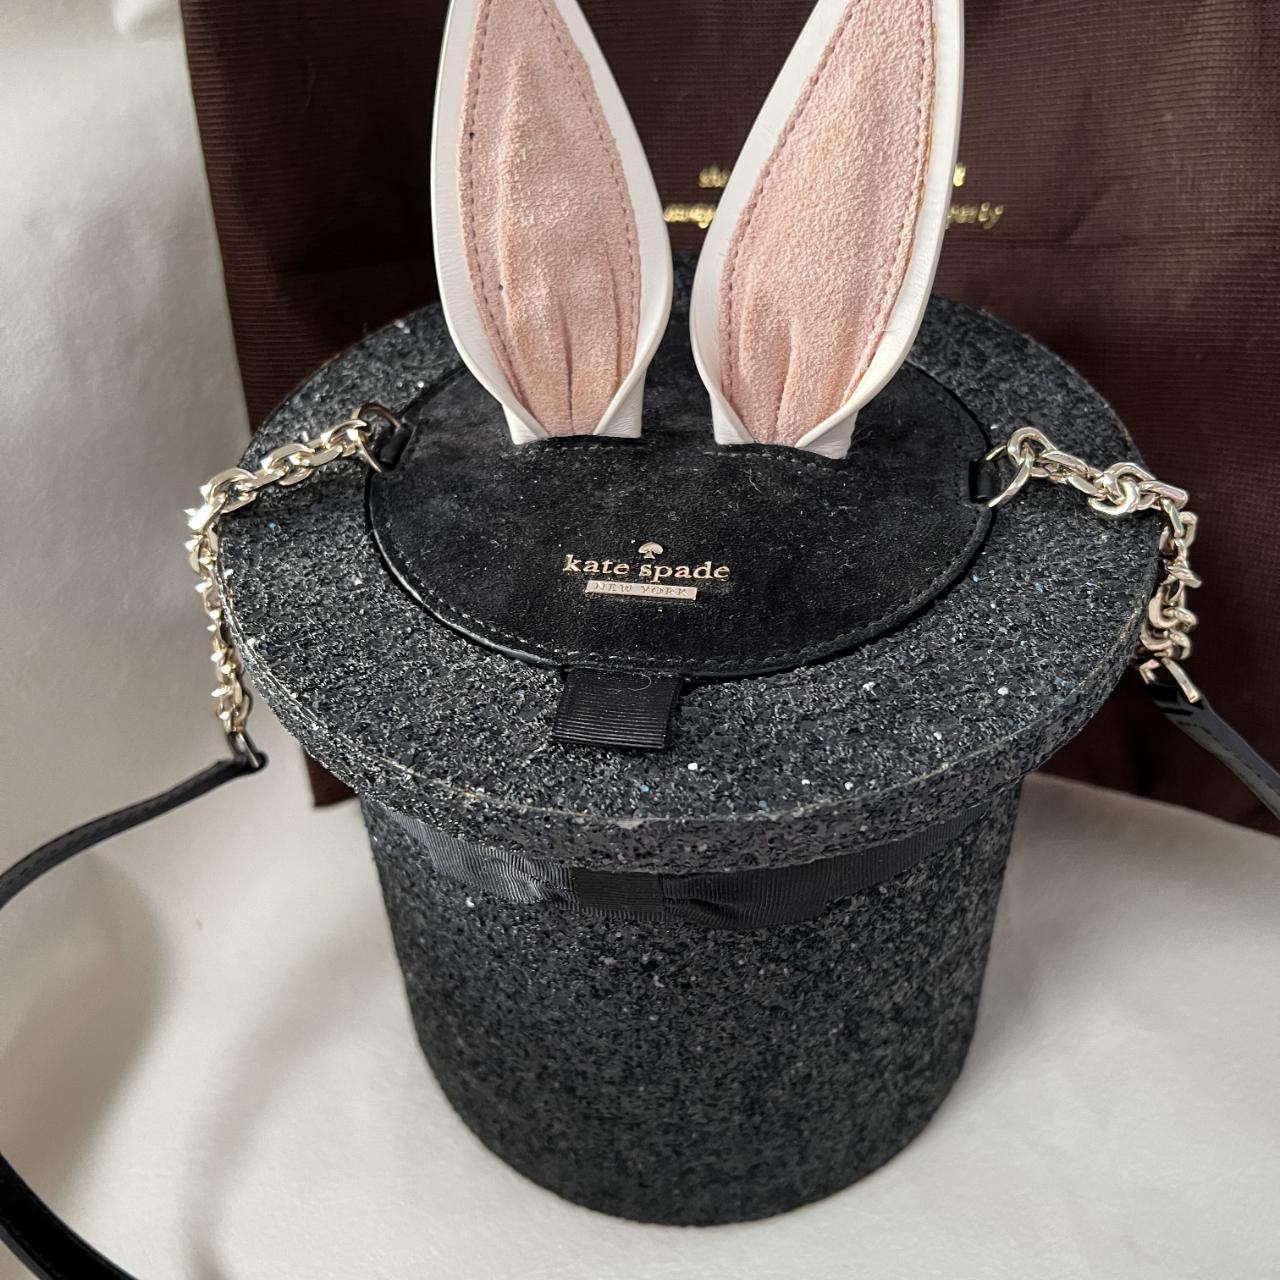 Kate Spade Make Magic Rabbit in Hat Glitter Shoulder... - Depop